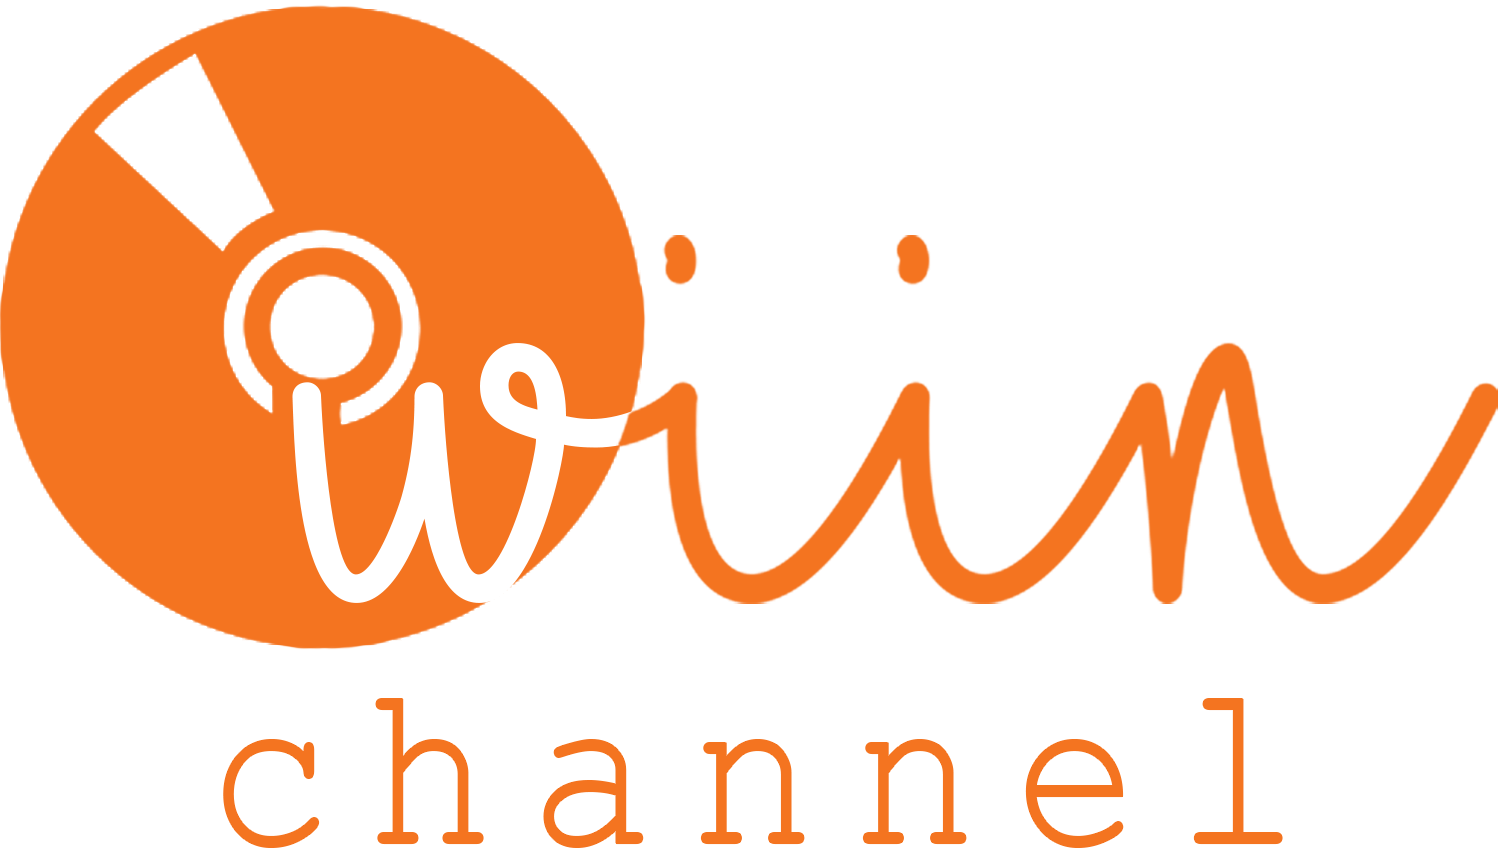 logo wiin channel